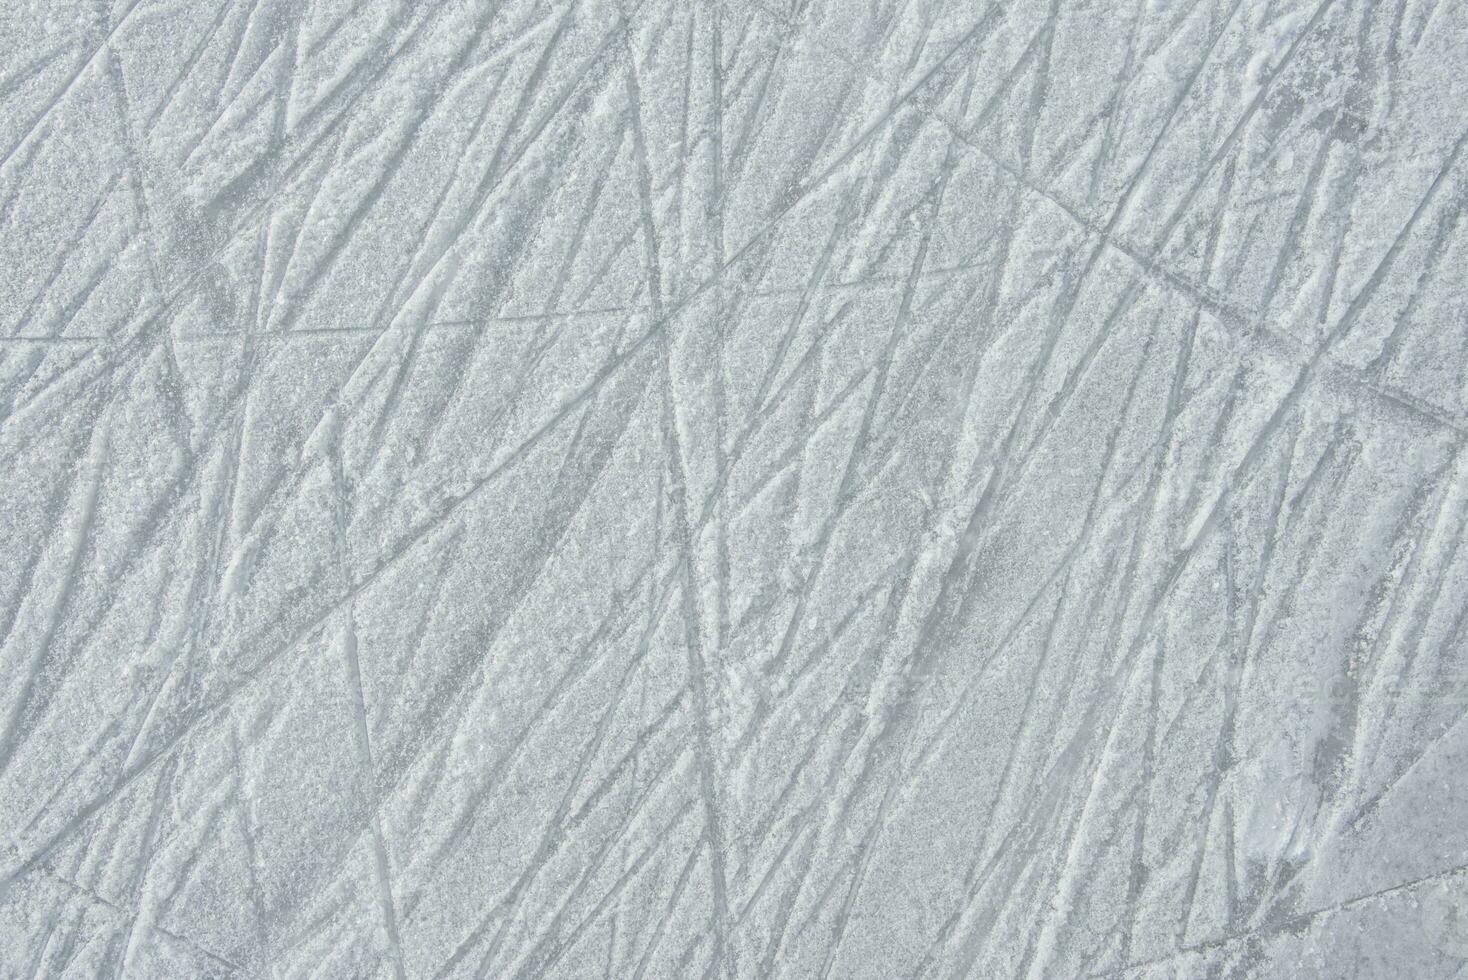 traces sur le la glace de patins sur le patinoire photo